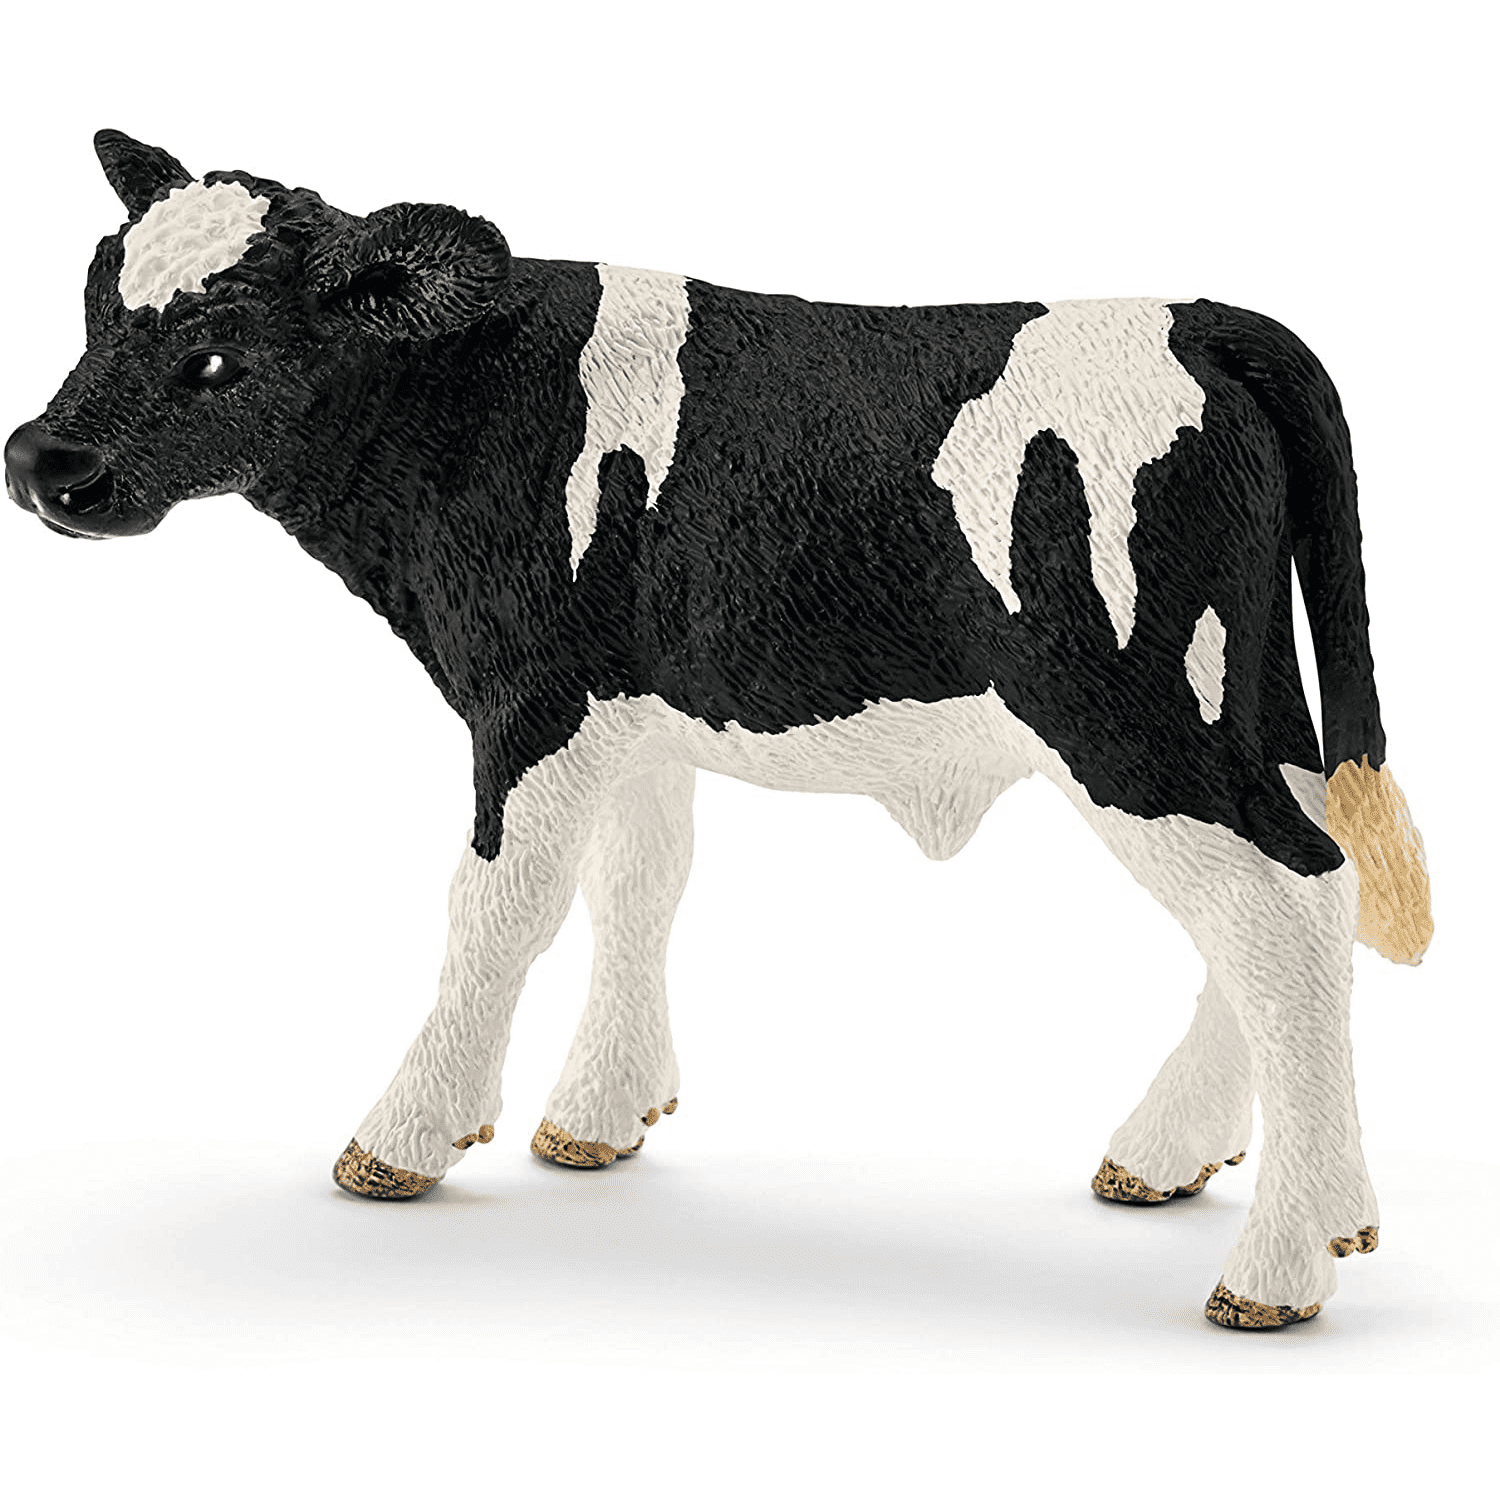 Schleich Farm World Holstein Calf Toy